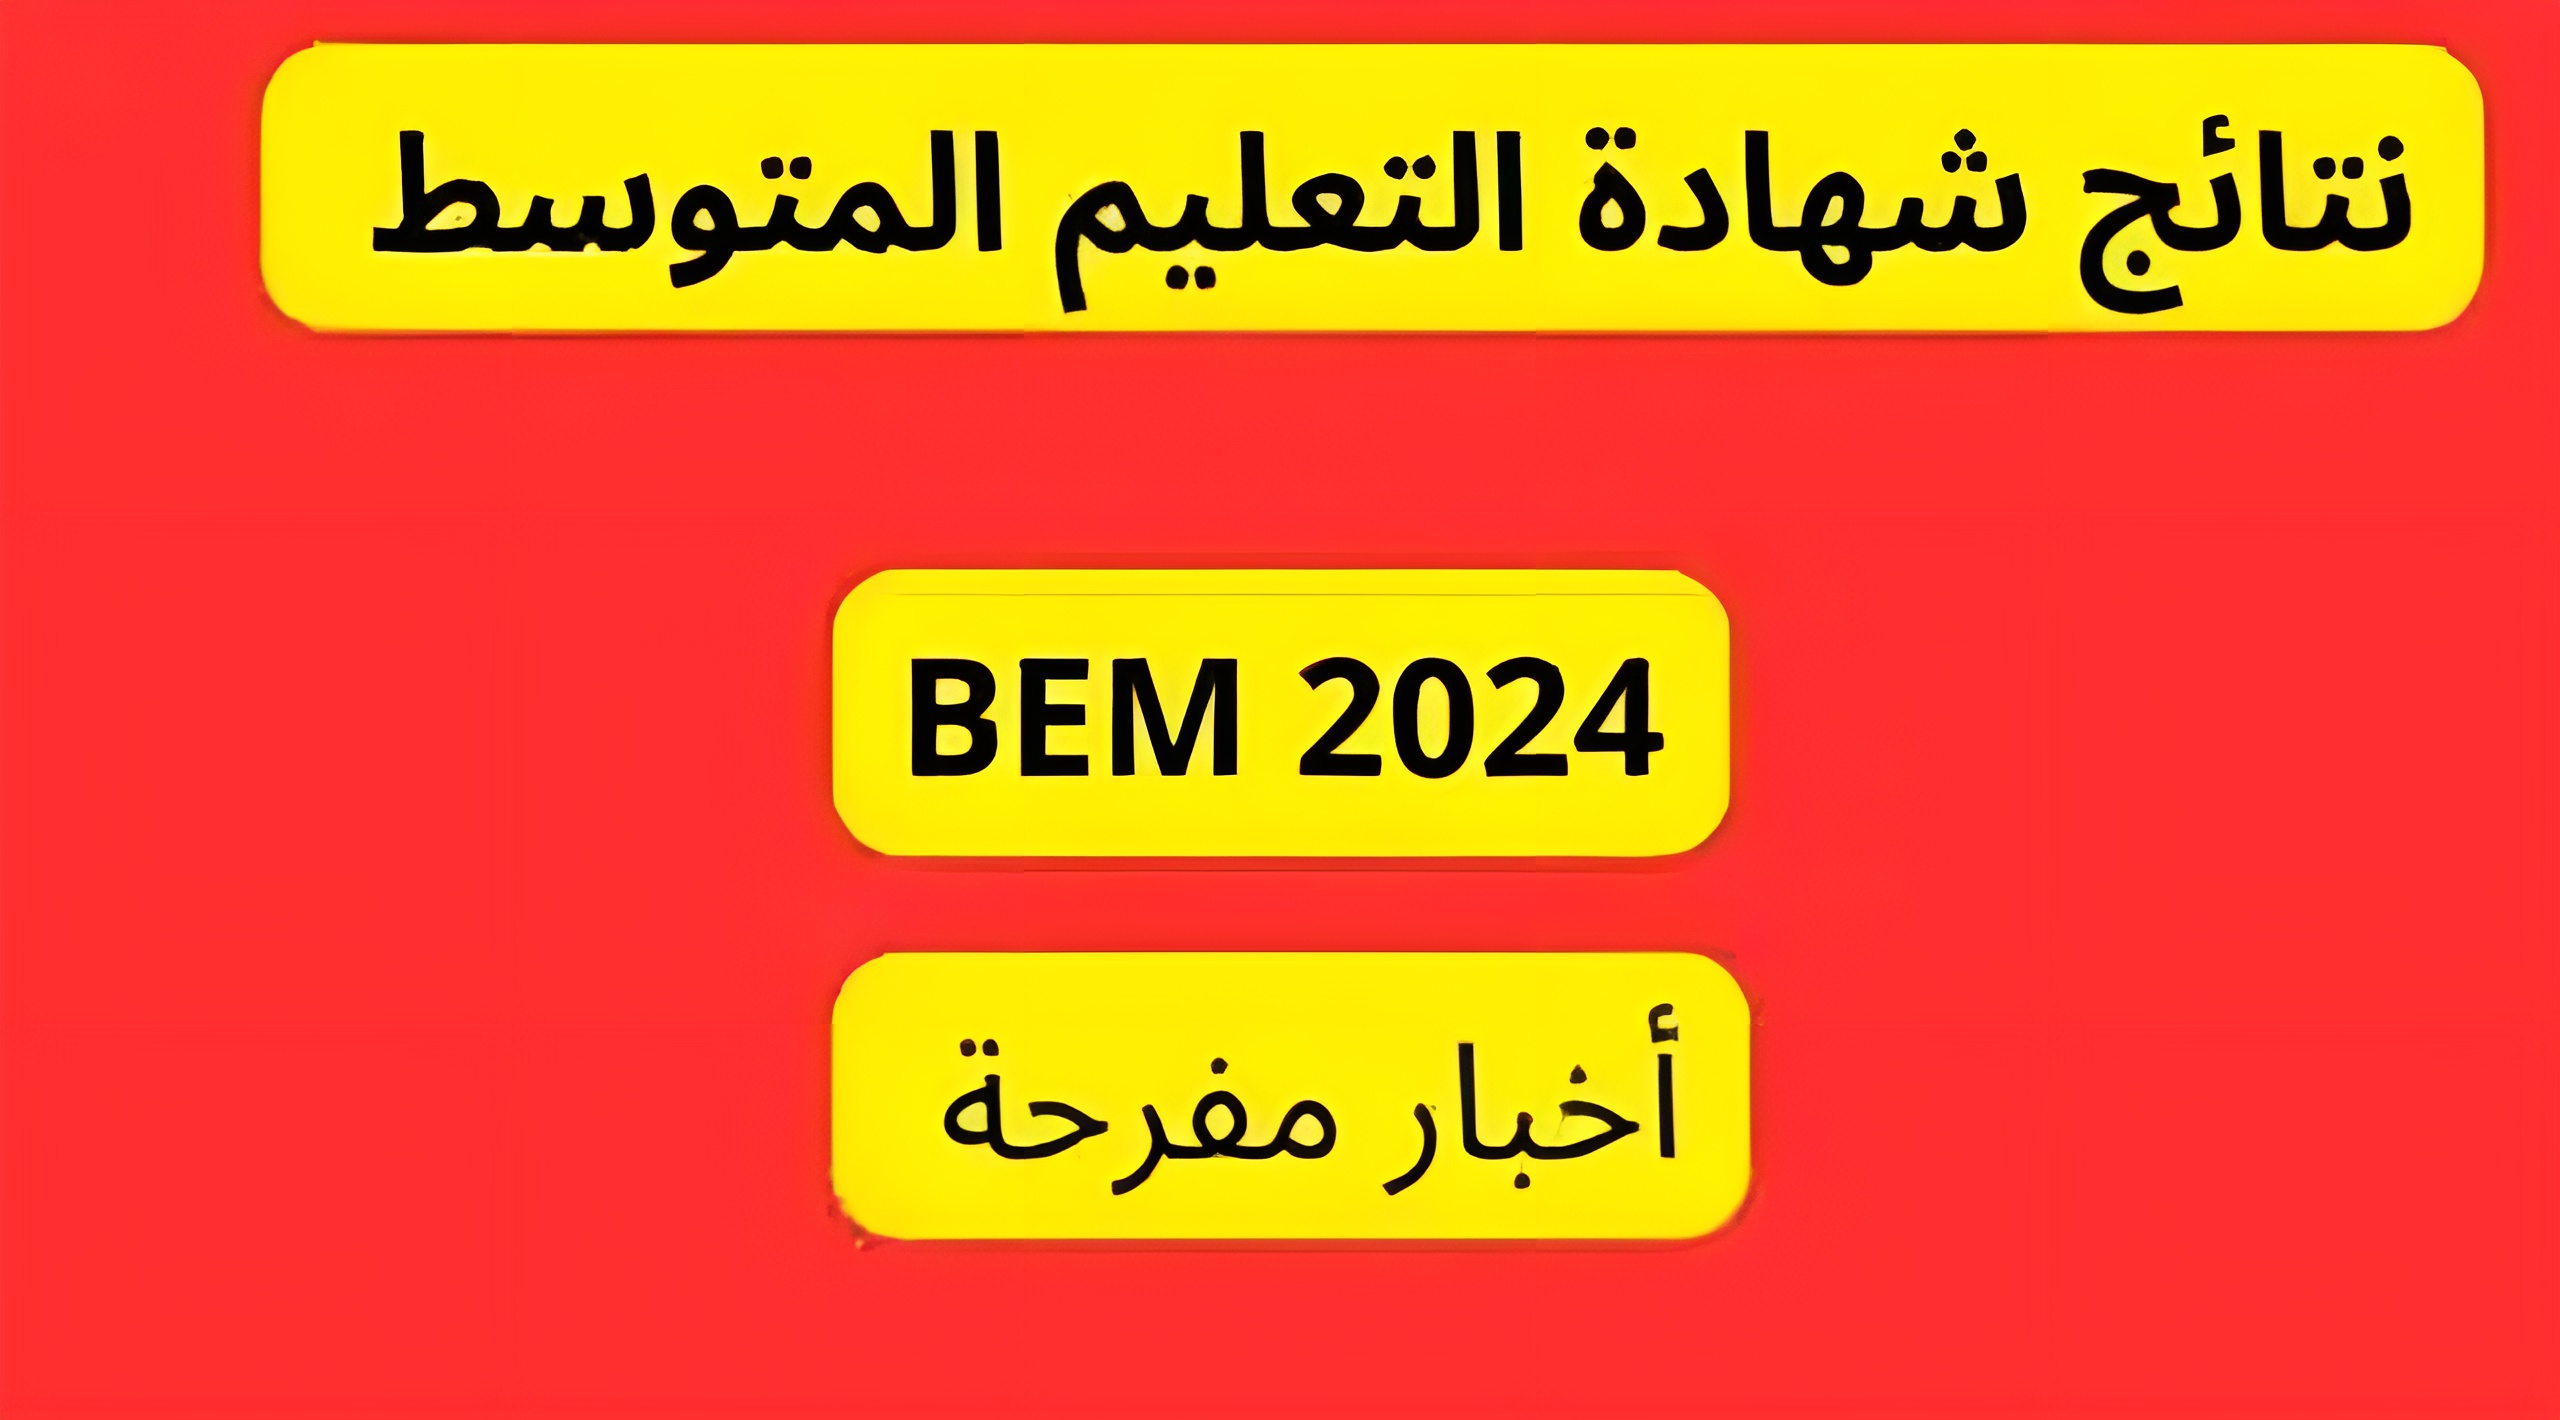 “ظهرت الان نتائج البيام 2024” هنا نتائج شهادة التعليم المتوسط دورة جوان 2024 في الجزائر